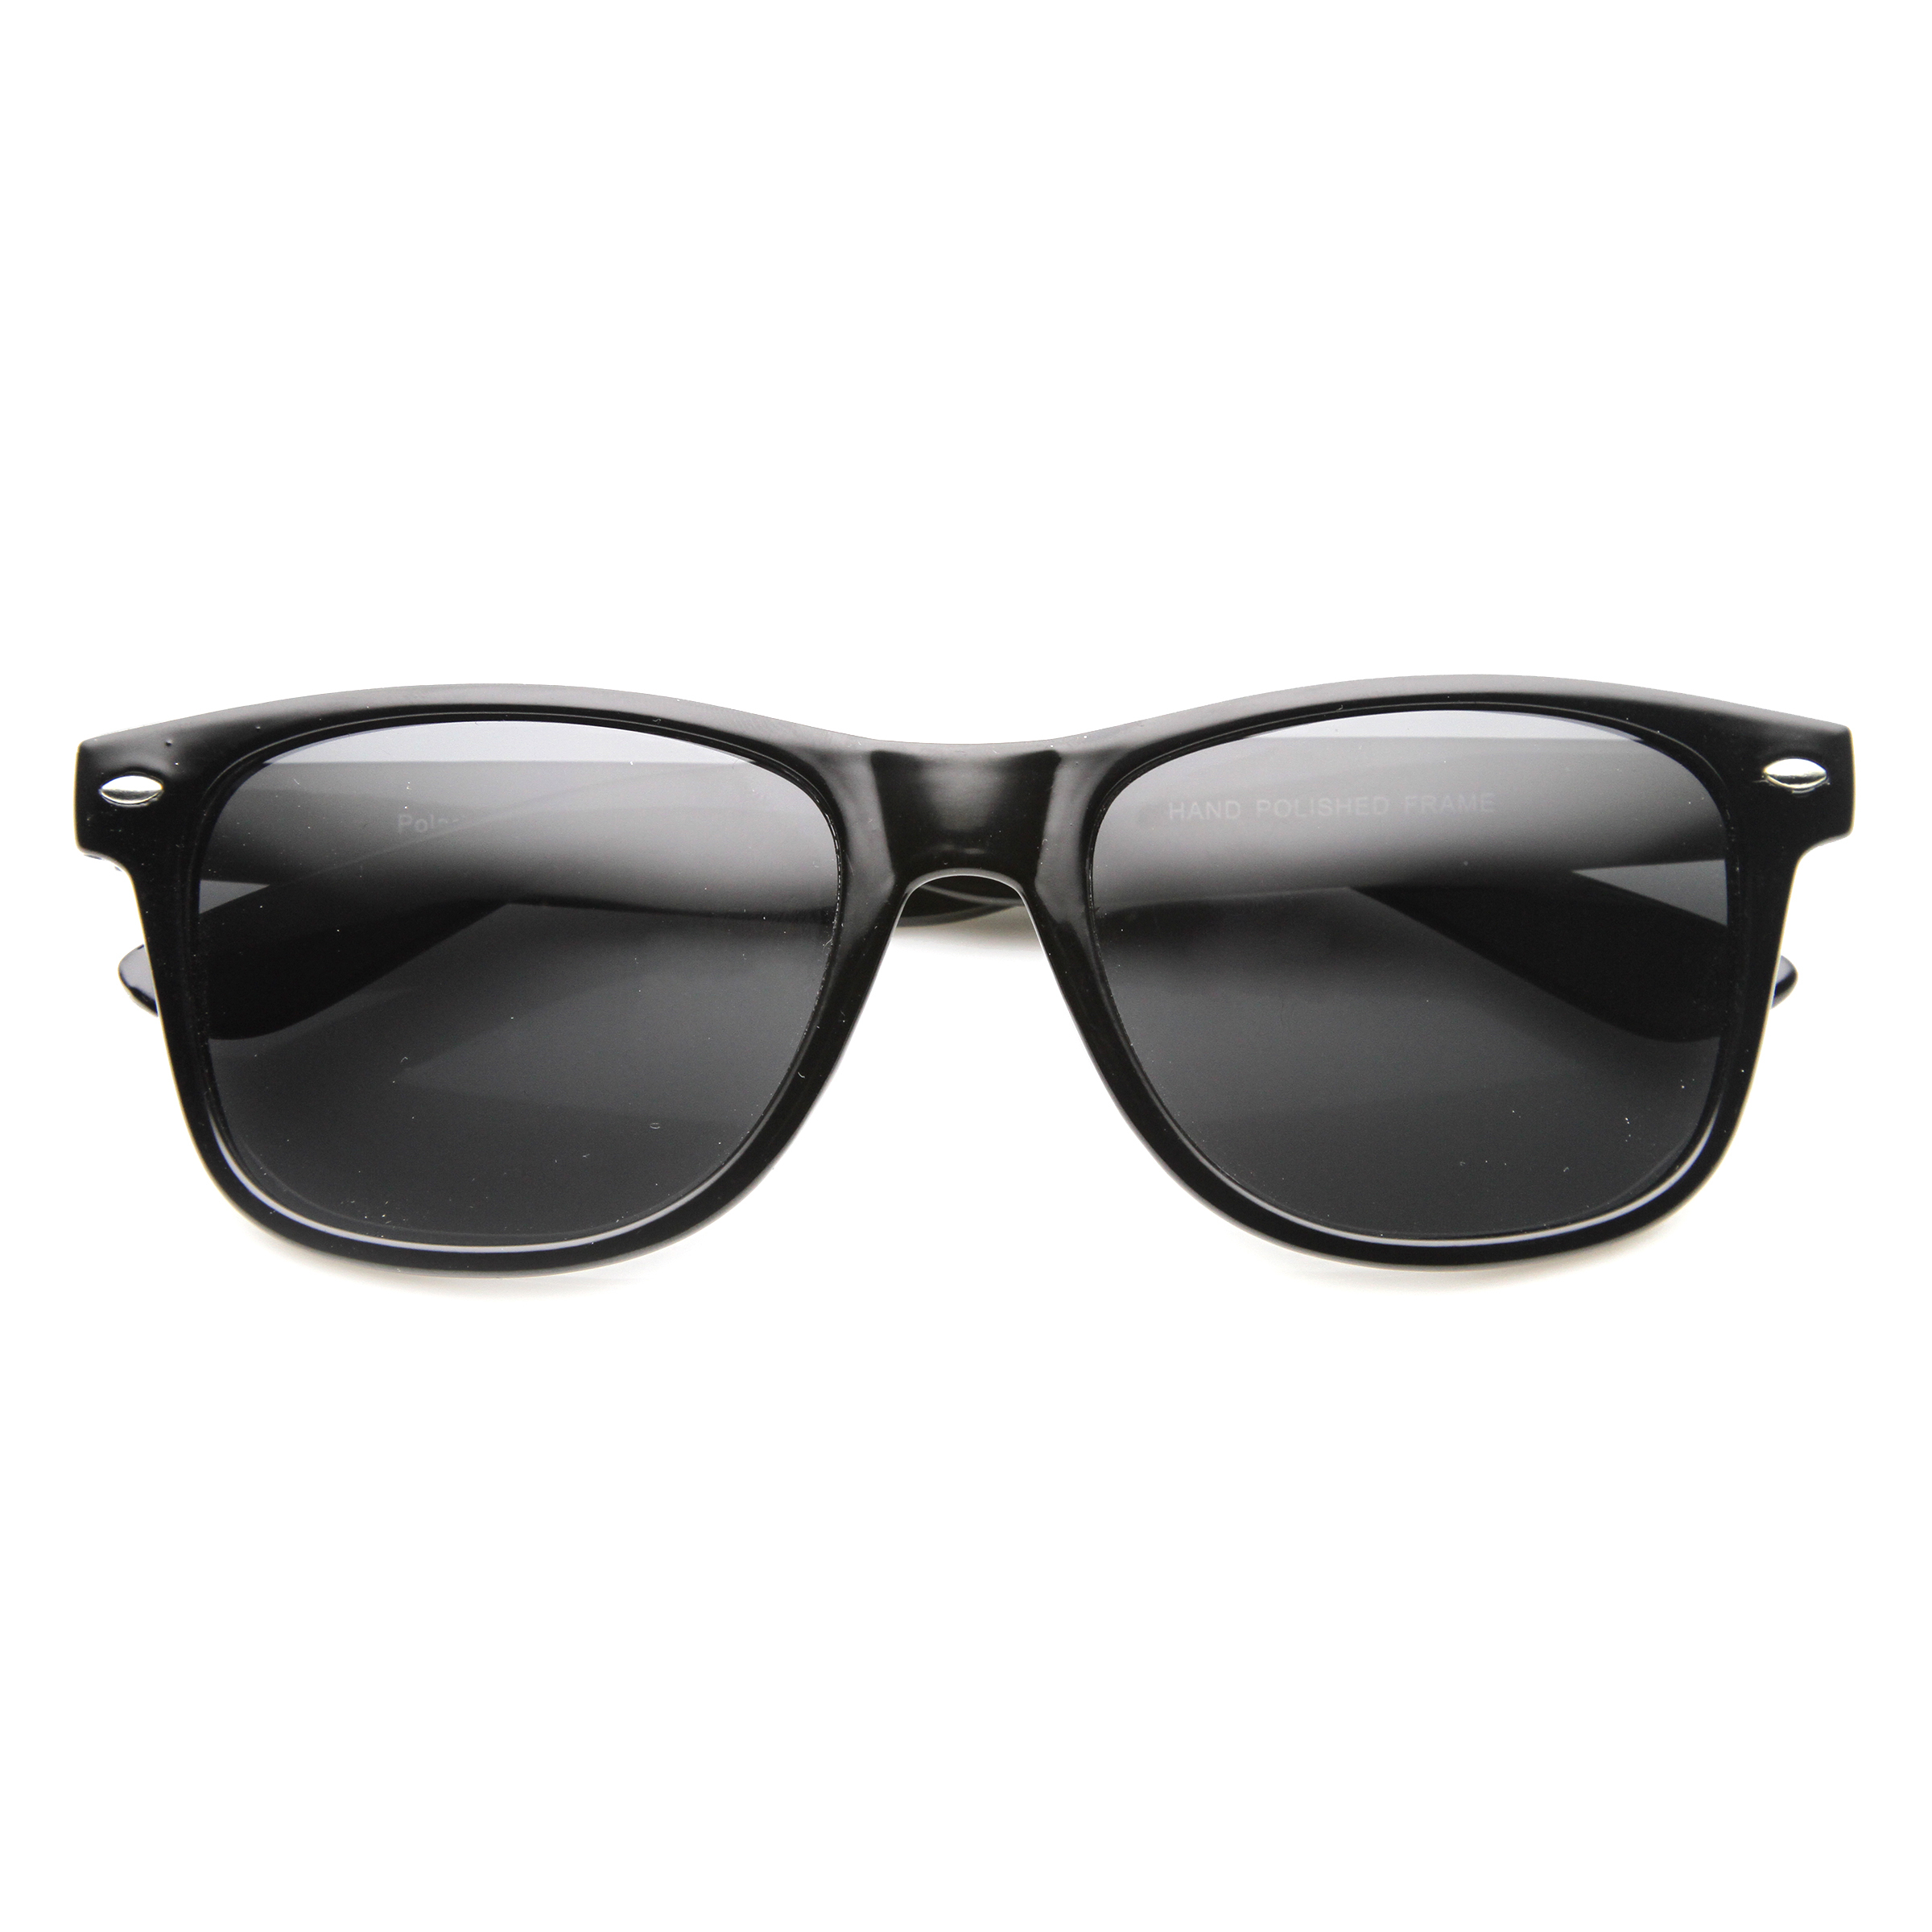 Classic 80s Retro Large Classic Horned Rim Style Sunglasses Eyewear - 8452 - Black / Polarized Lens